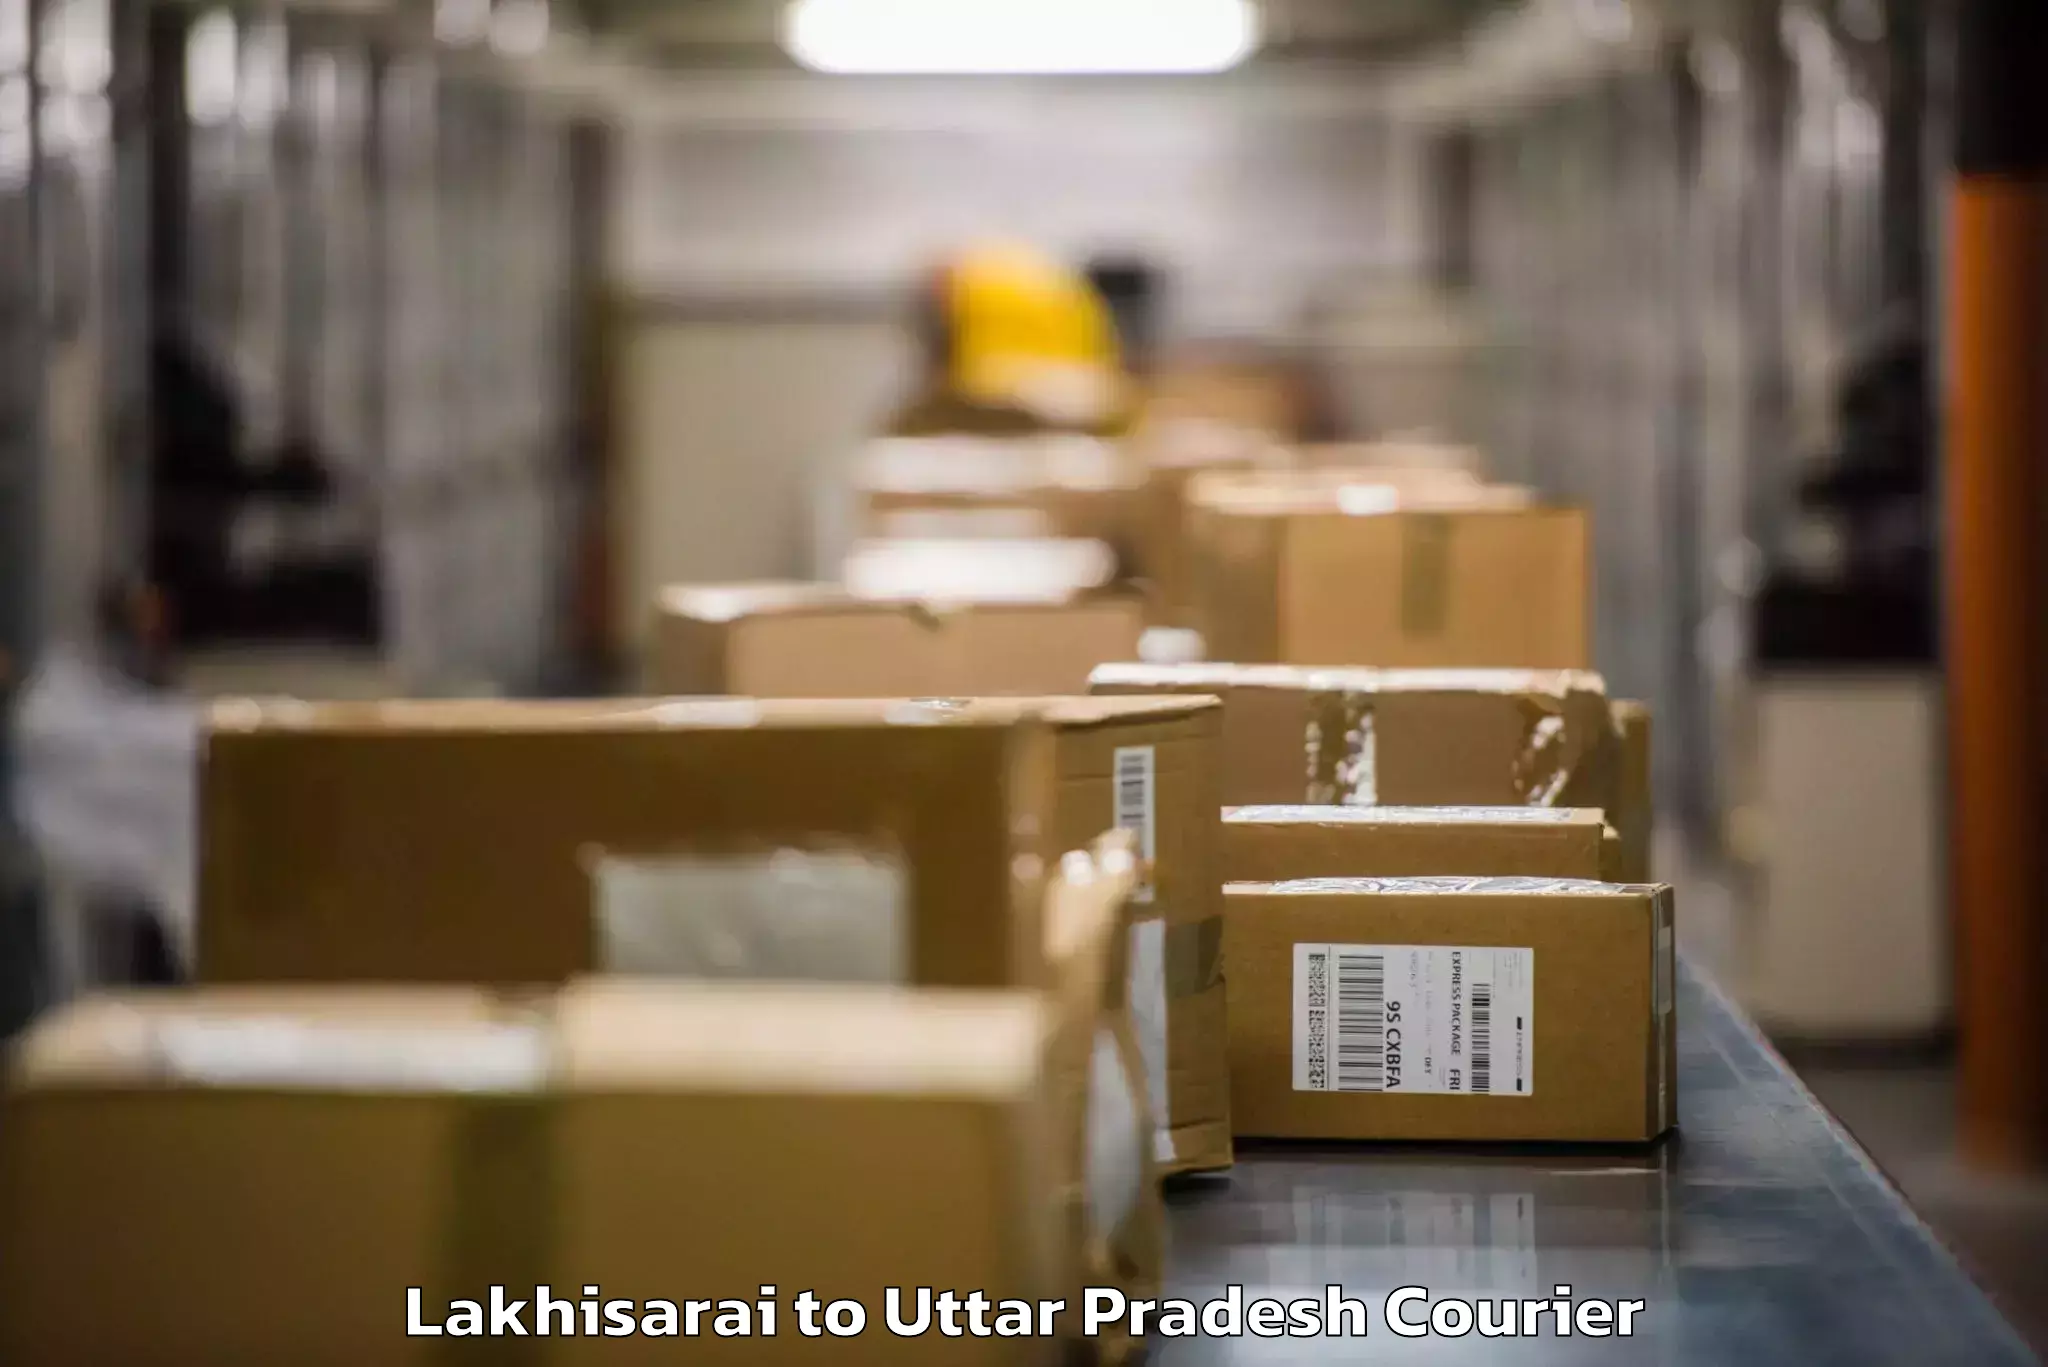 Luggage transport company Lakhisarai to Mahoba